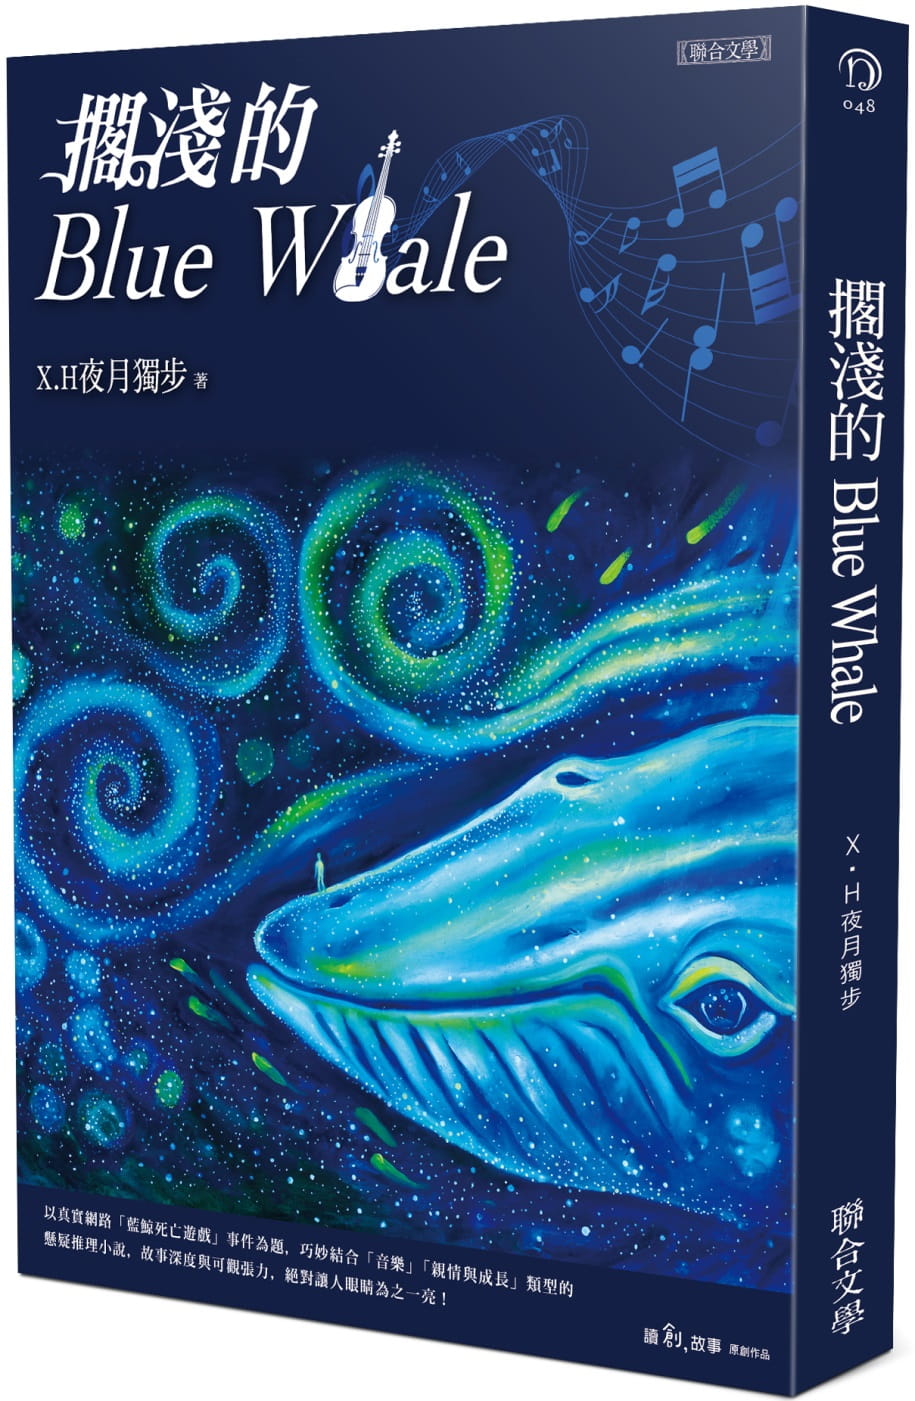 预售 X.H夜月独步 搁浅的Blue Whale 联合文学